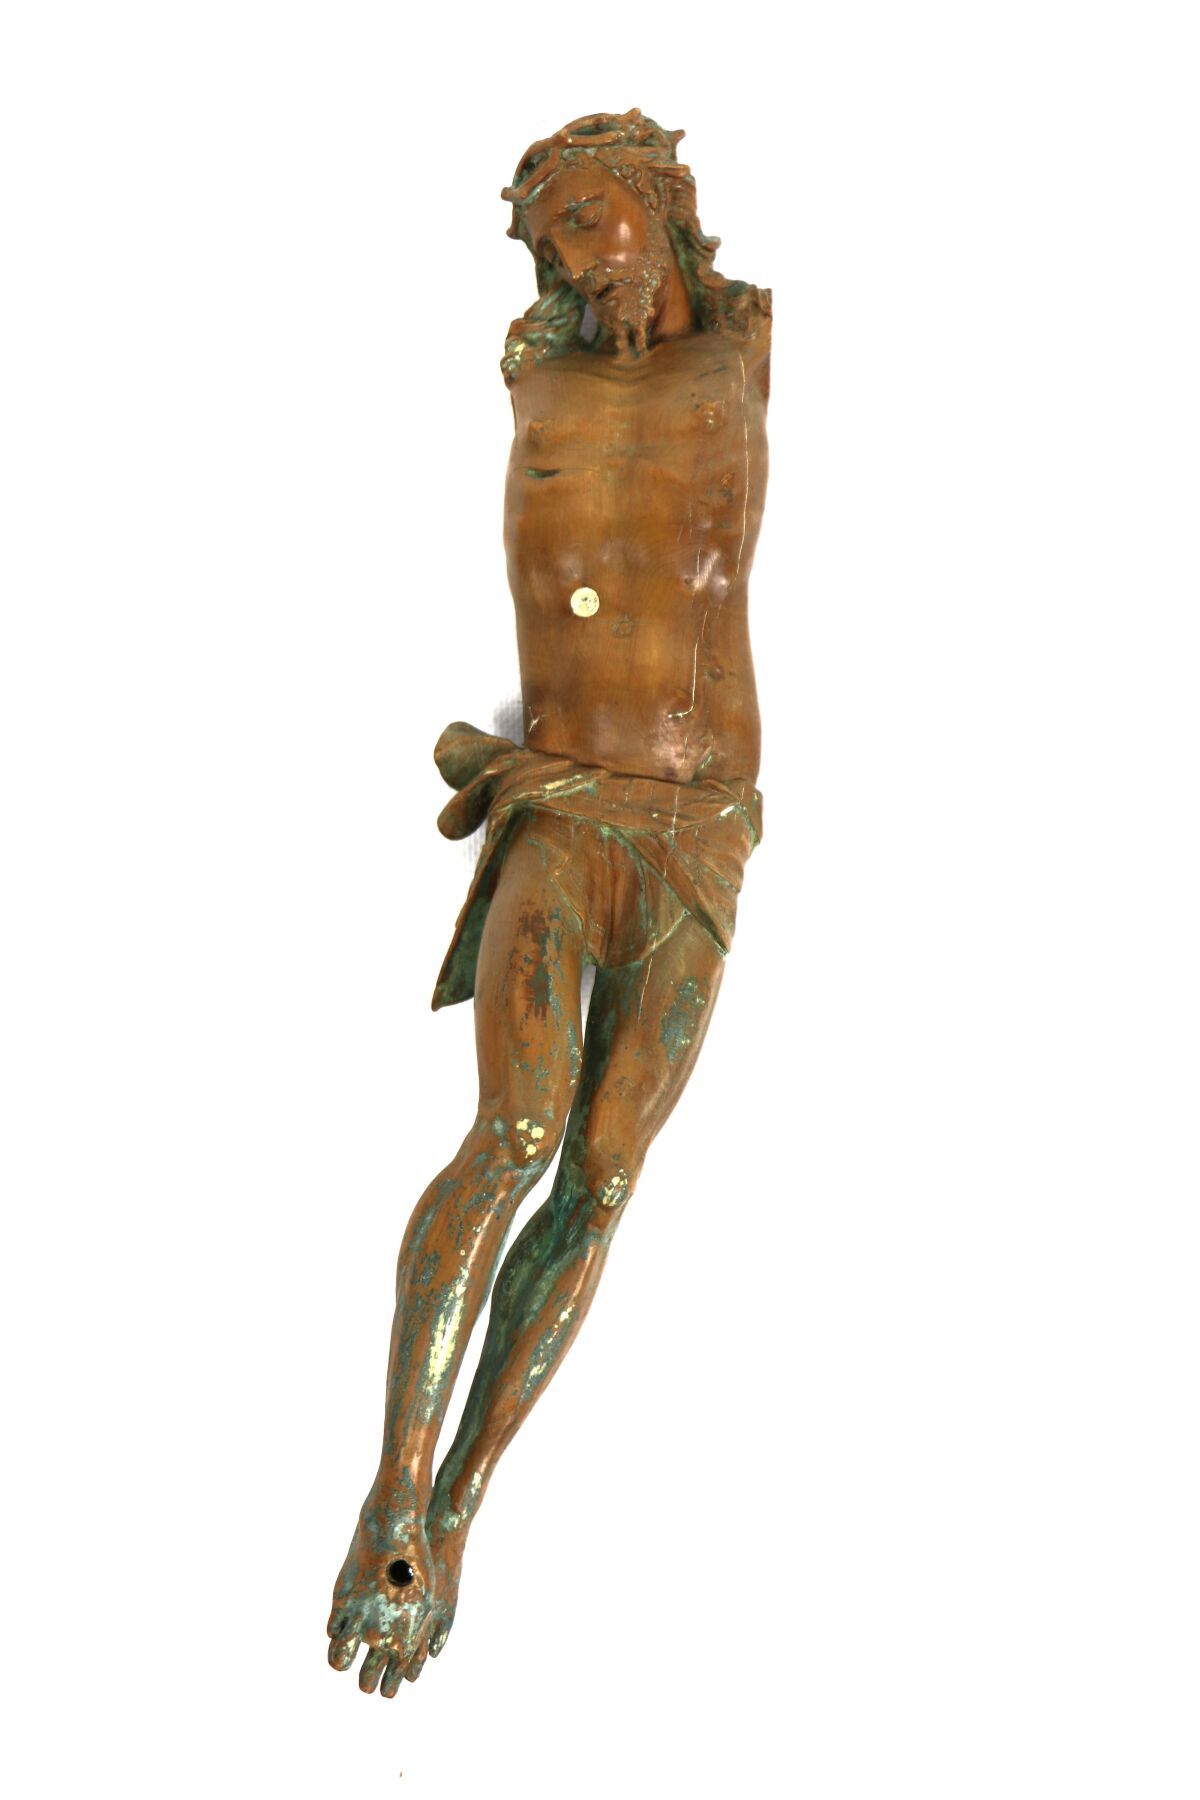 Null 软木雕刻的基督。
17世纪的民间艺术。
高_34.5厘米，手臂和脚部缺失，陈旧的绿色多色漆